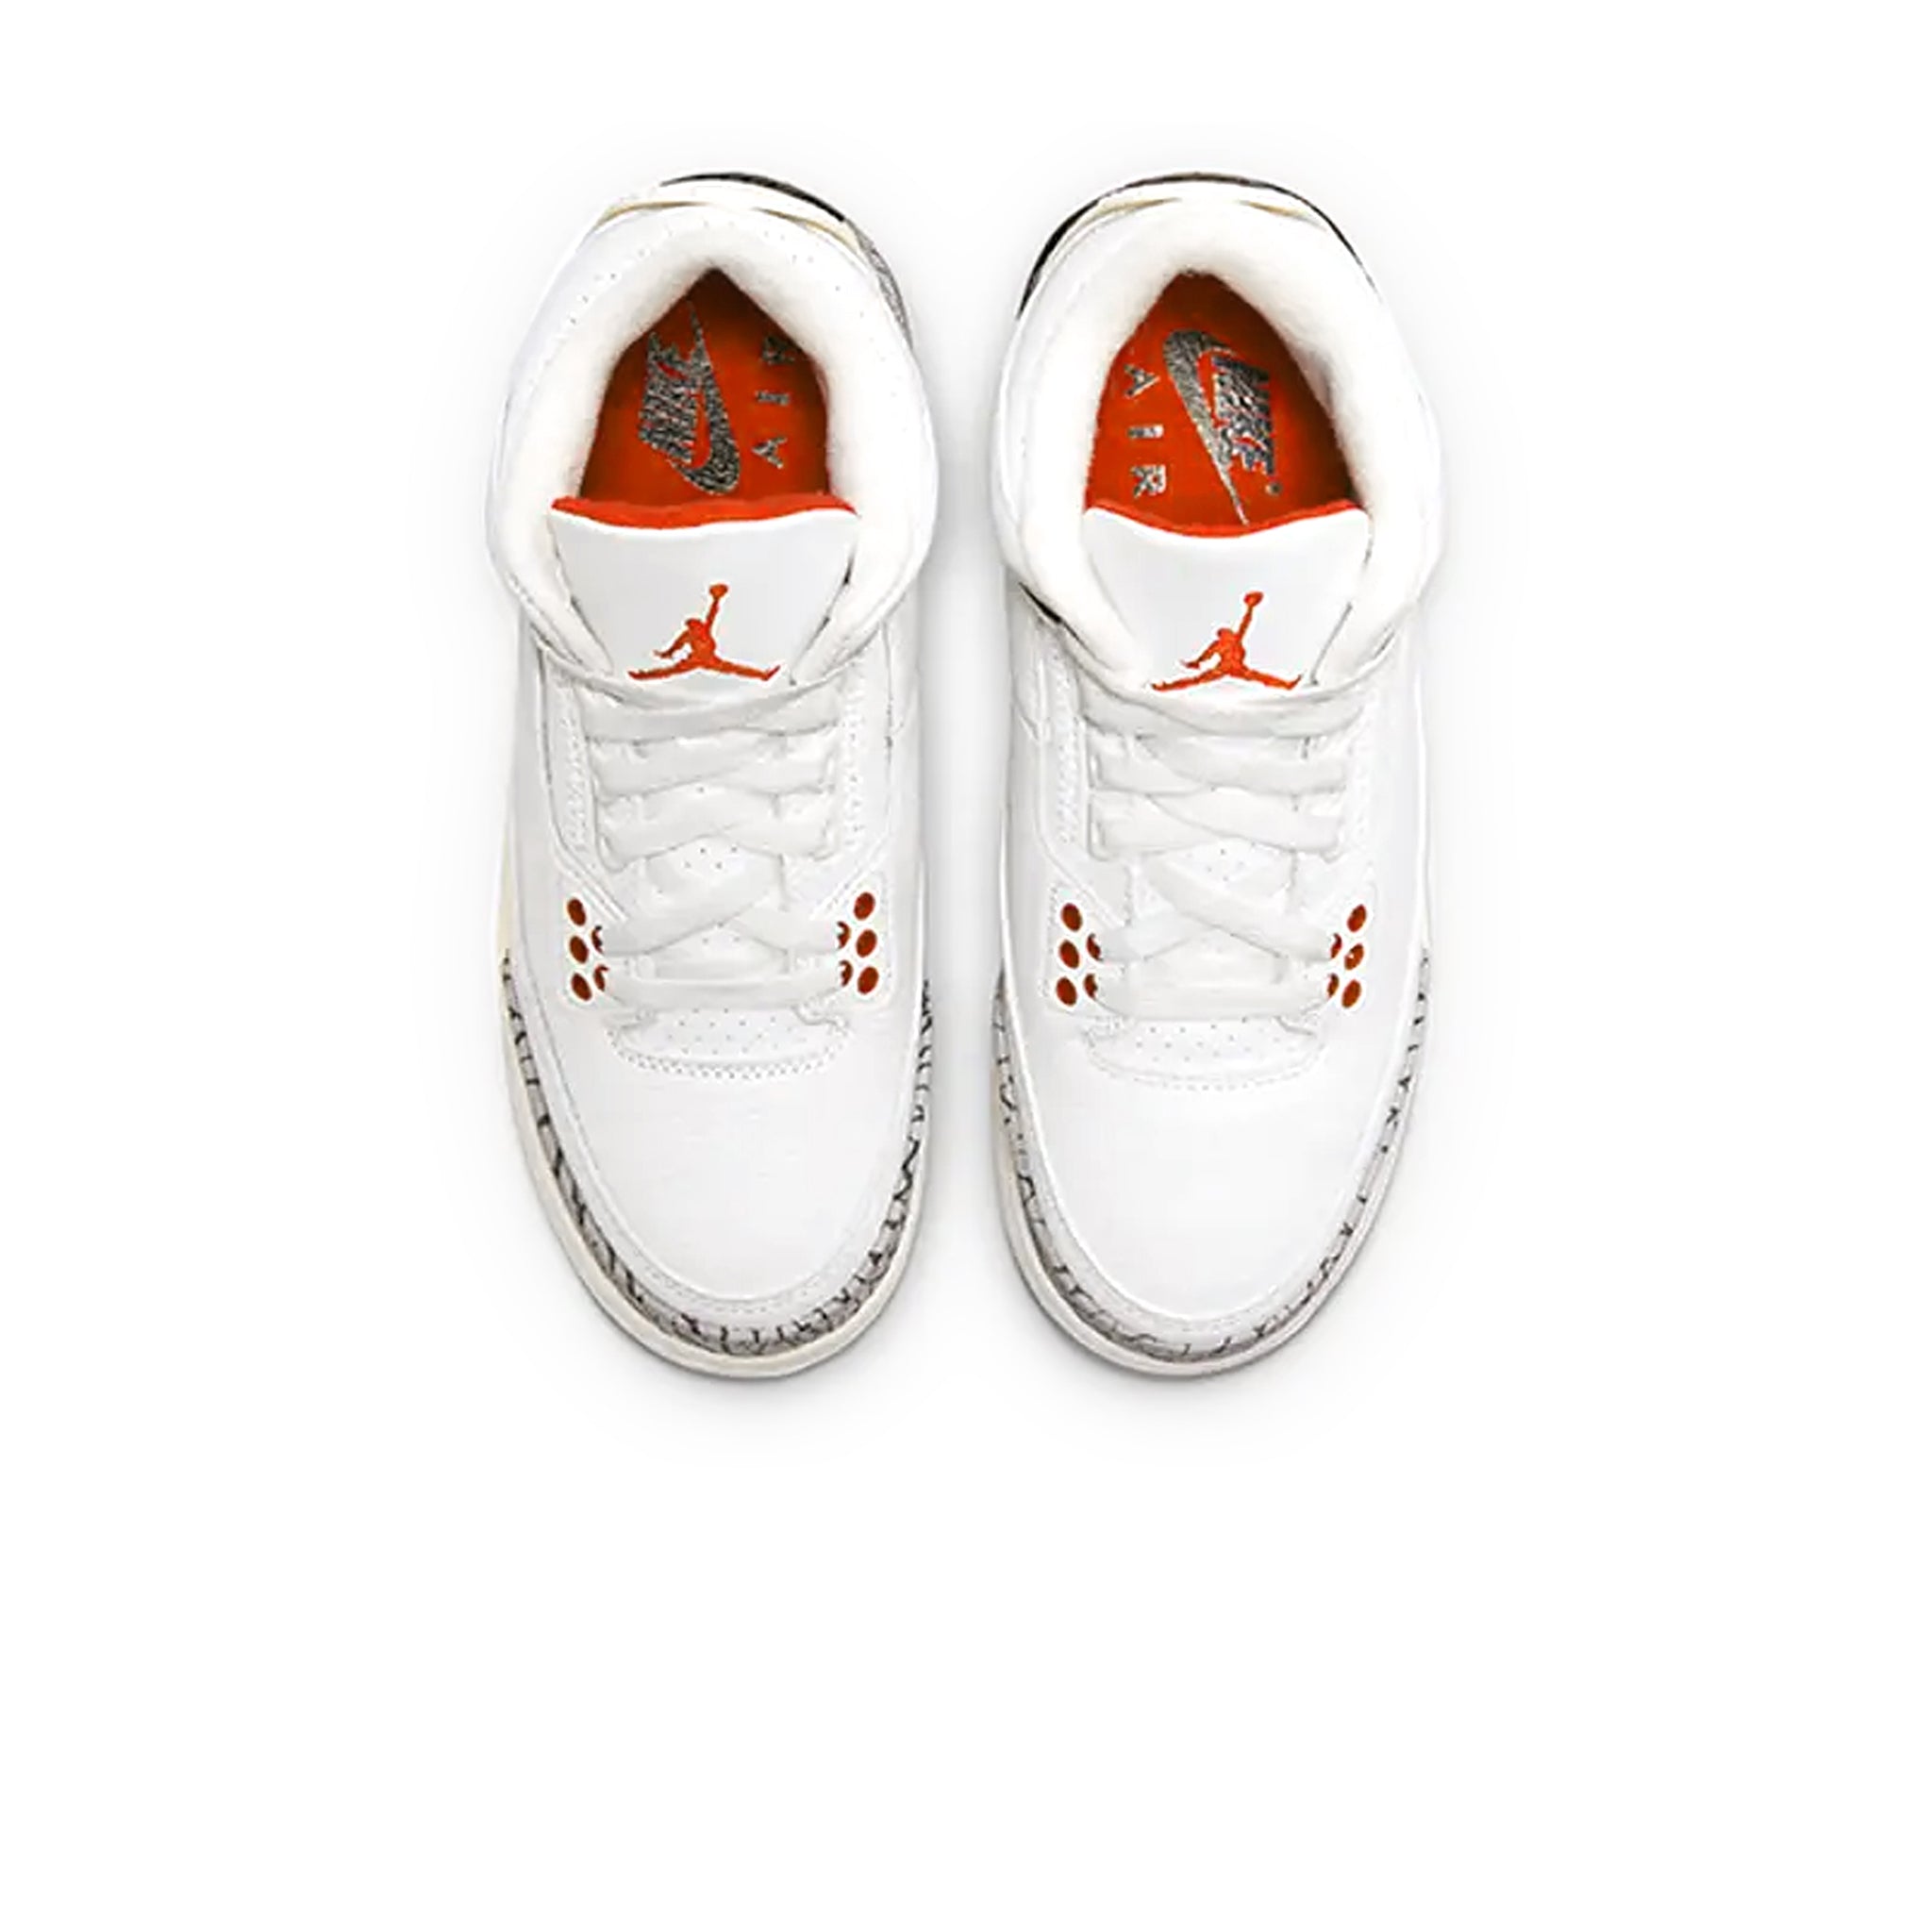 Image of Air Jordan 3 Retro White Cement Reimagined (GS)